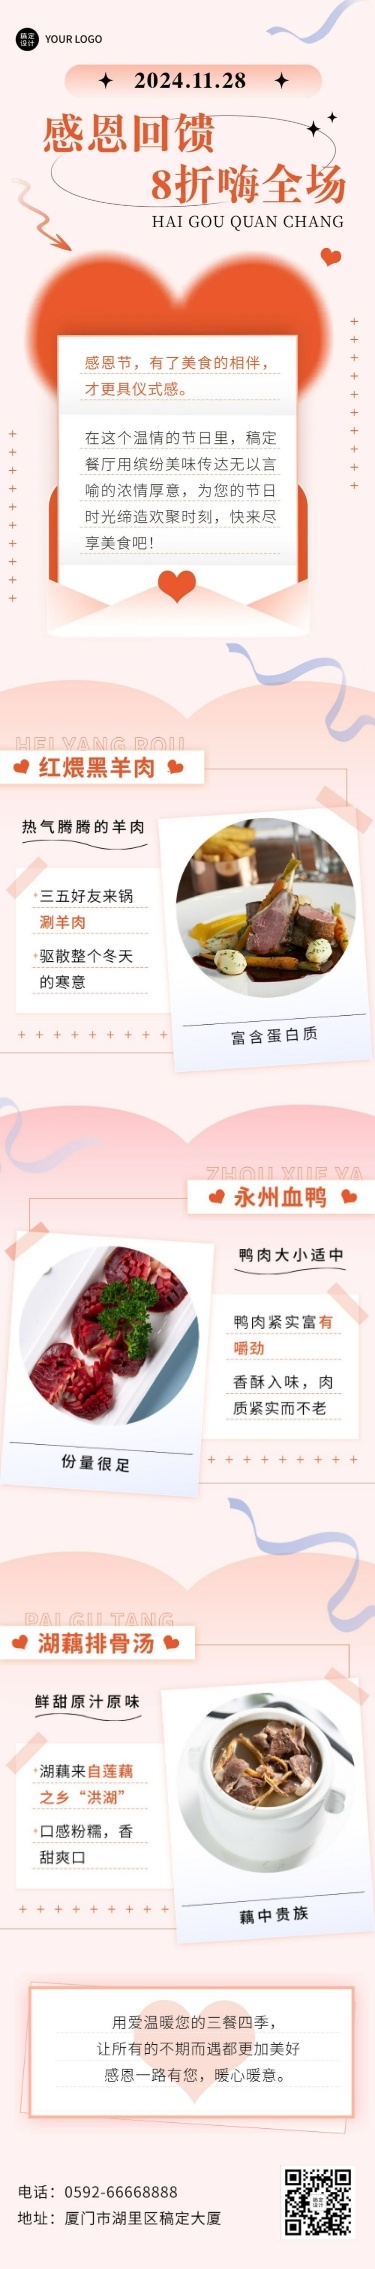 餐饮美食感恩节中餐节日营销文章长图